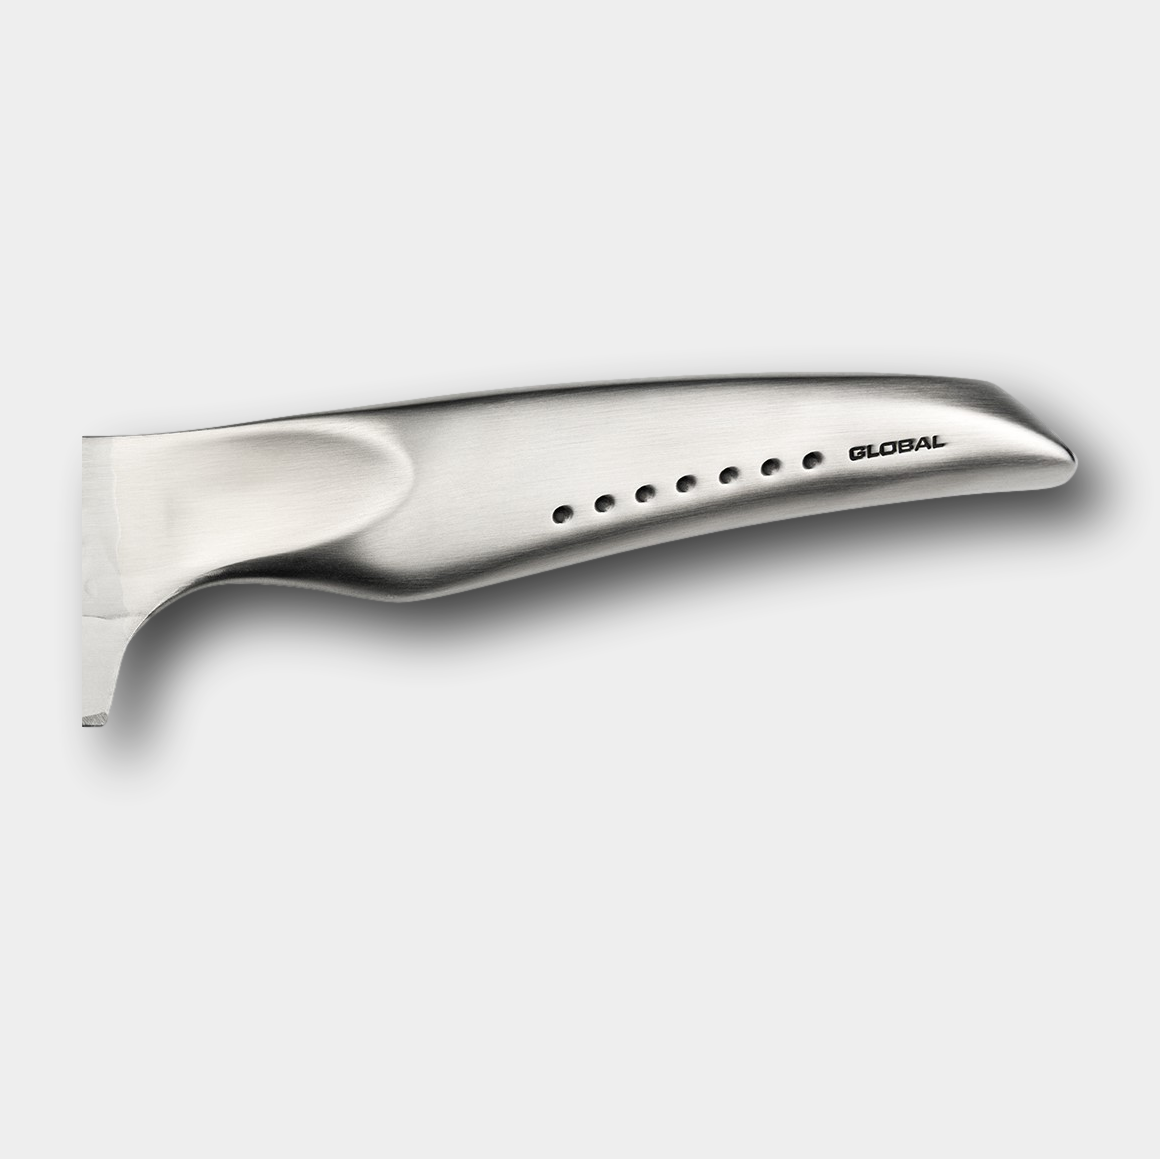 Global Sai Cook's Knife 14cm